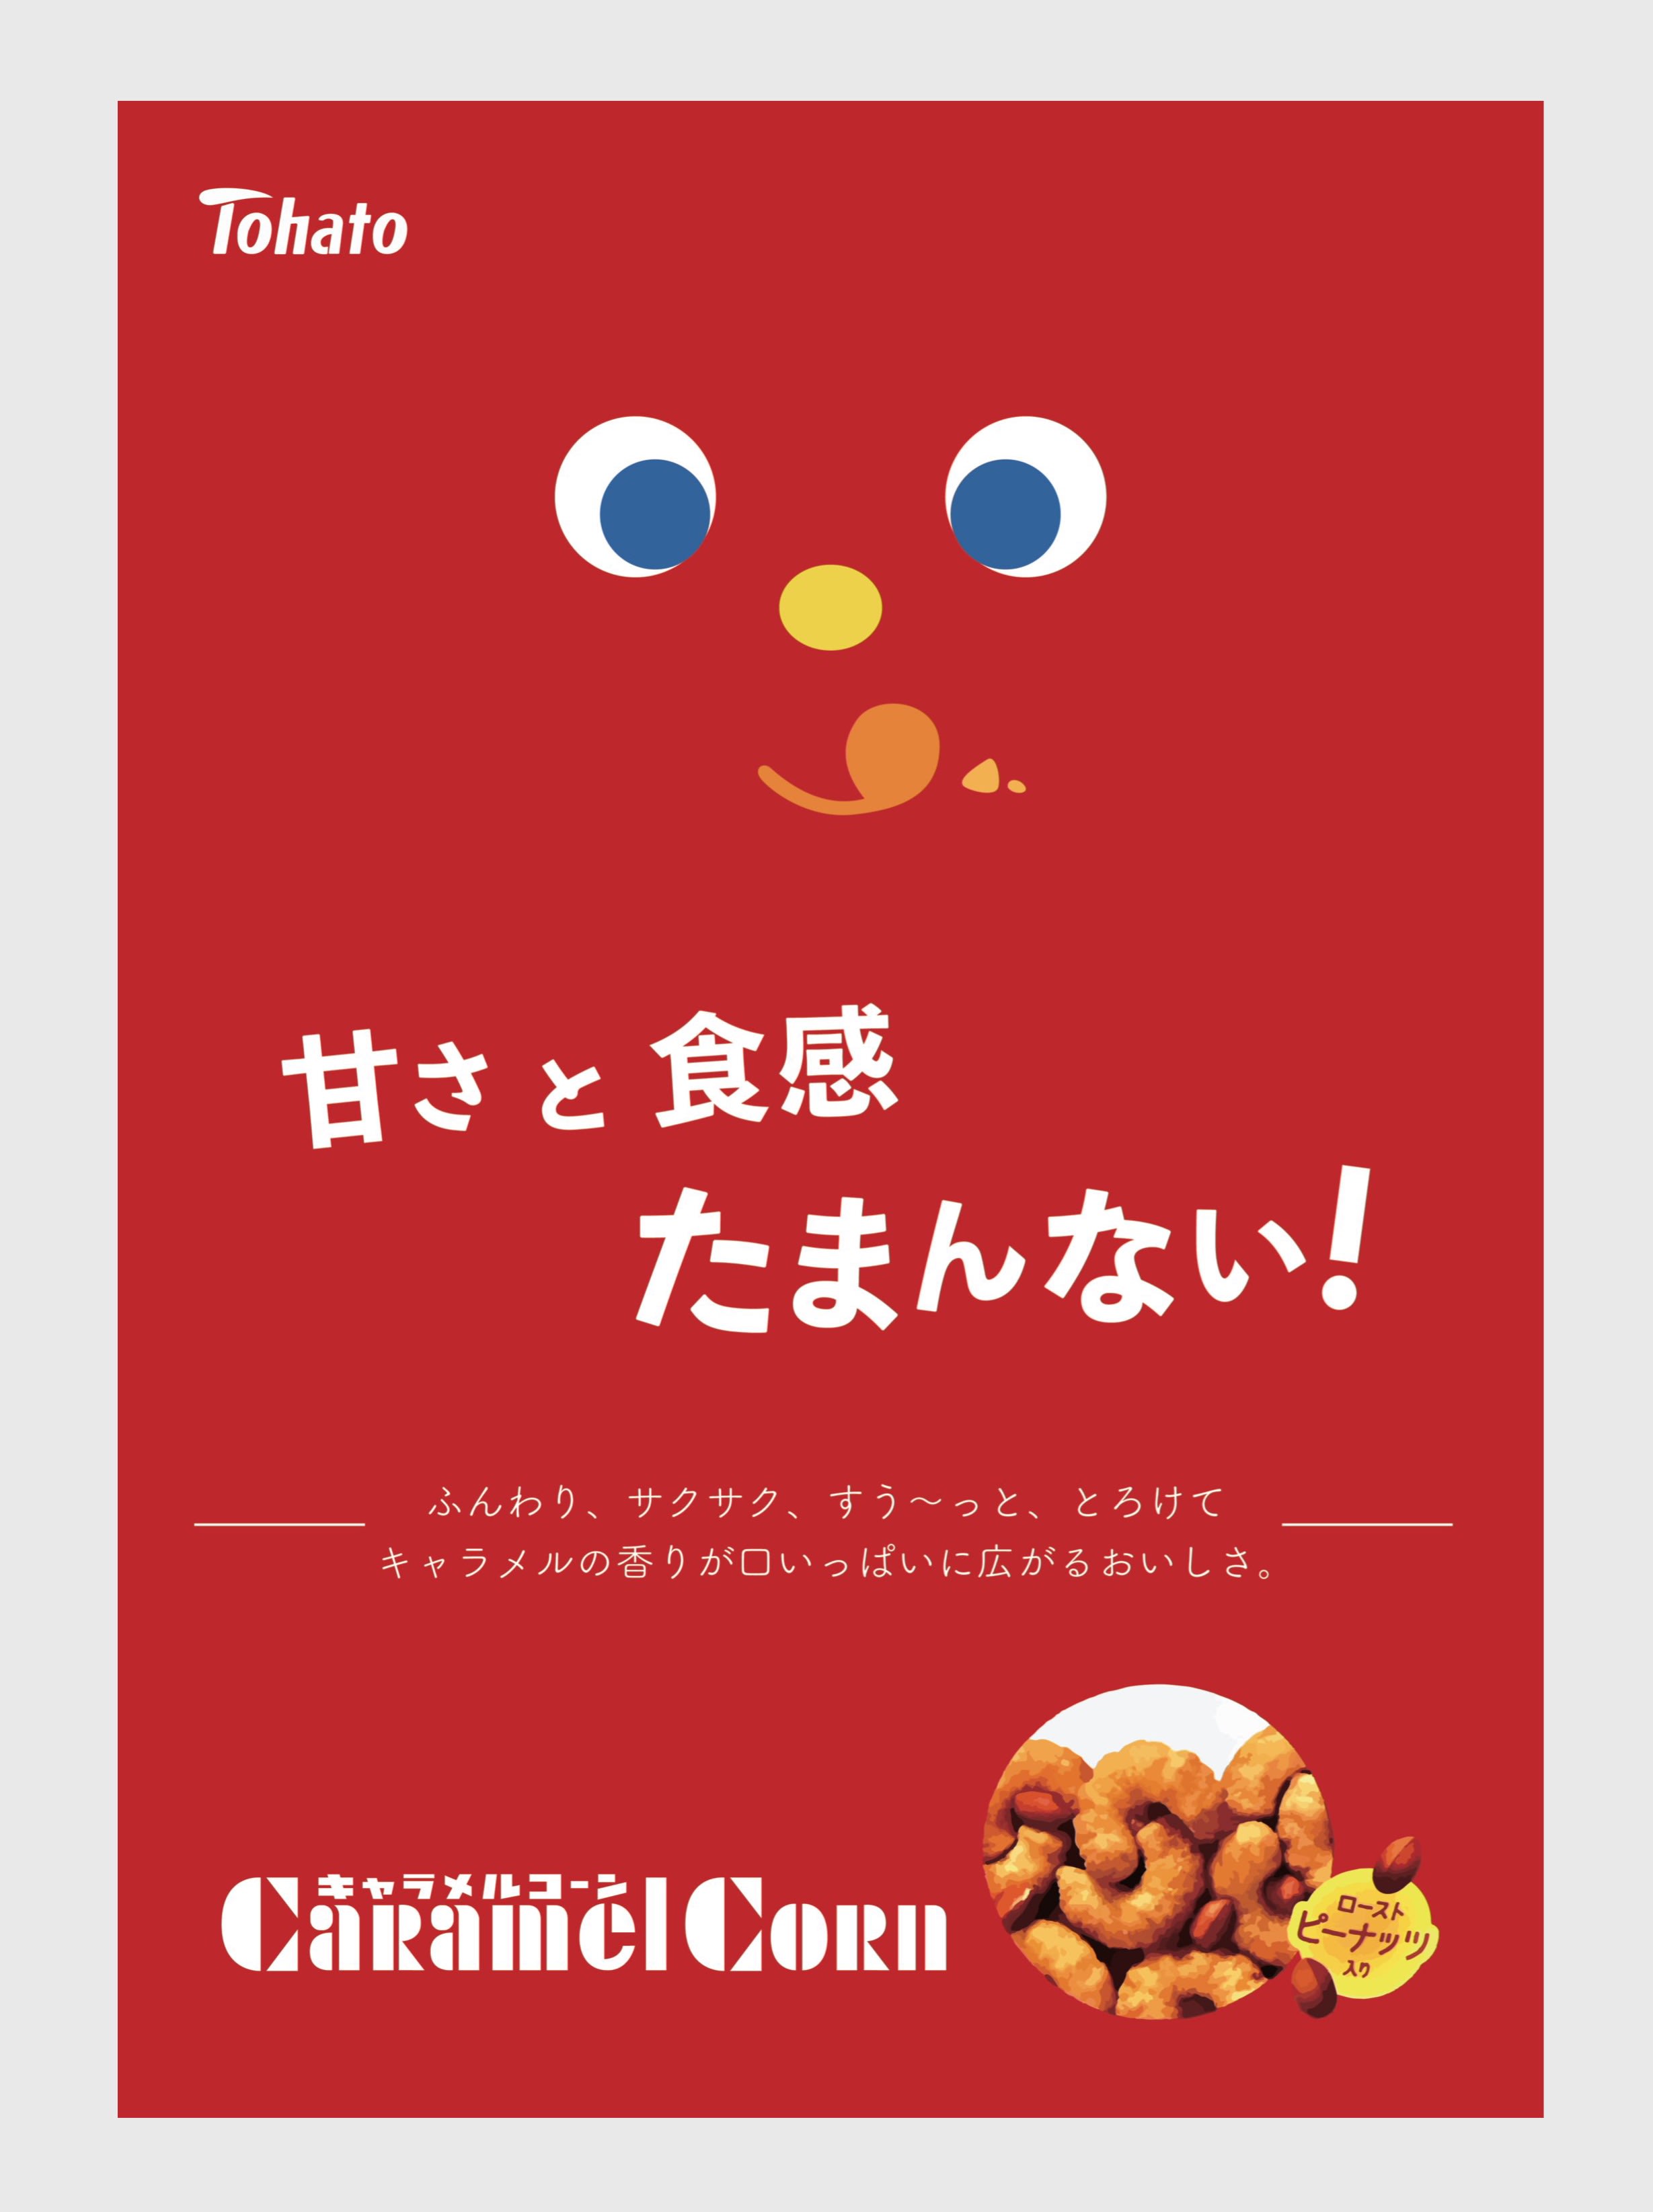 Tohato キャラメルコーン 広告 ポスター 専門学校九州デザイナー学院 Pando